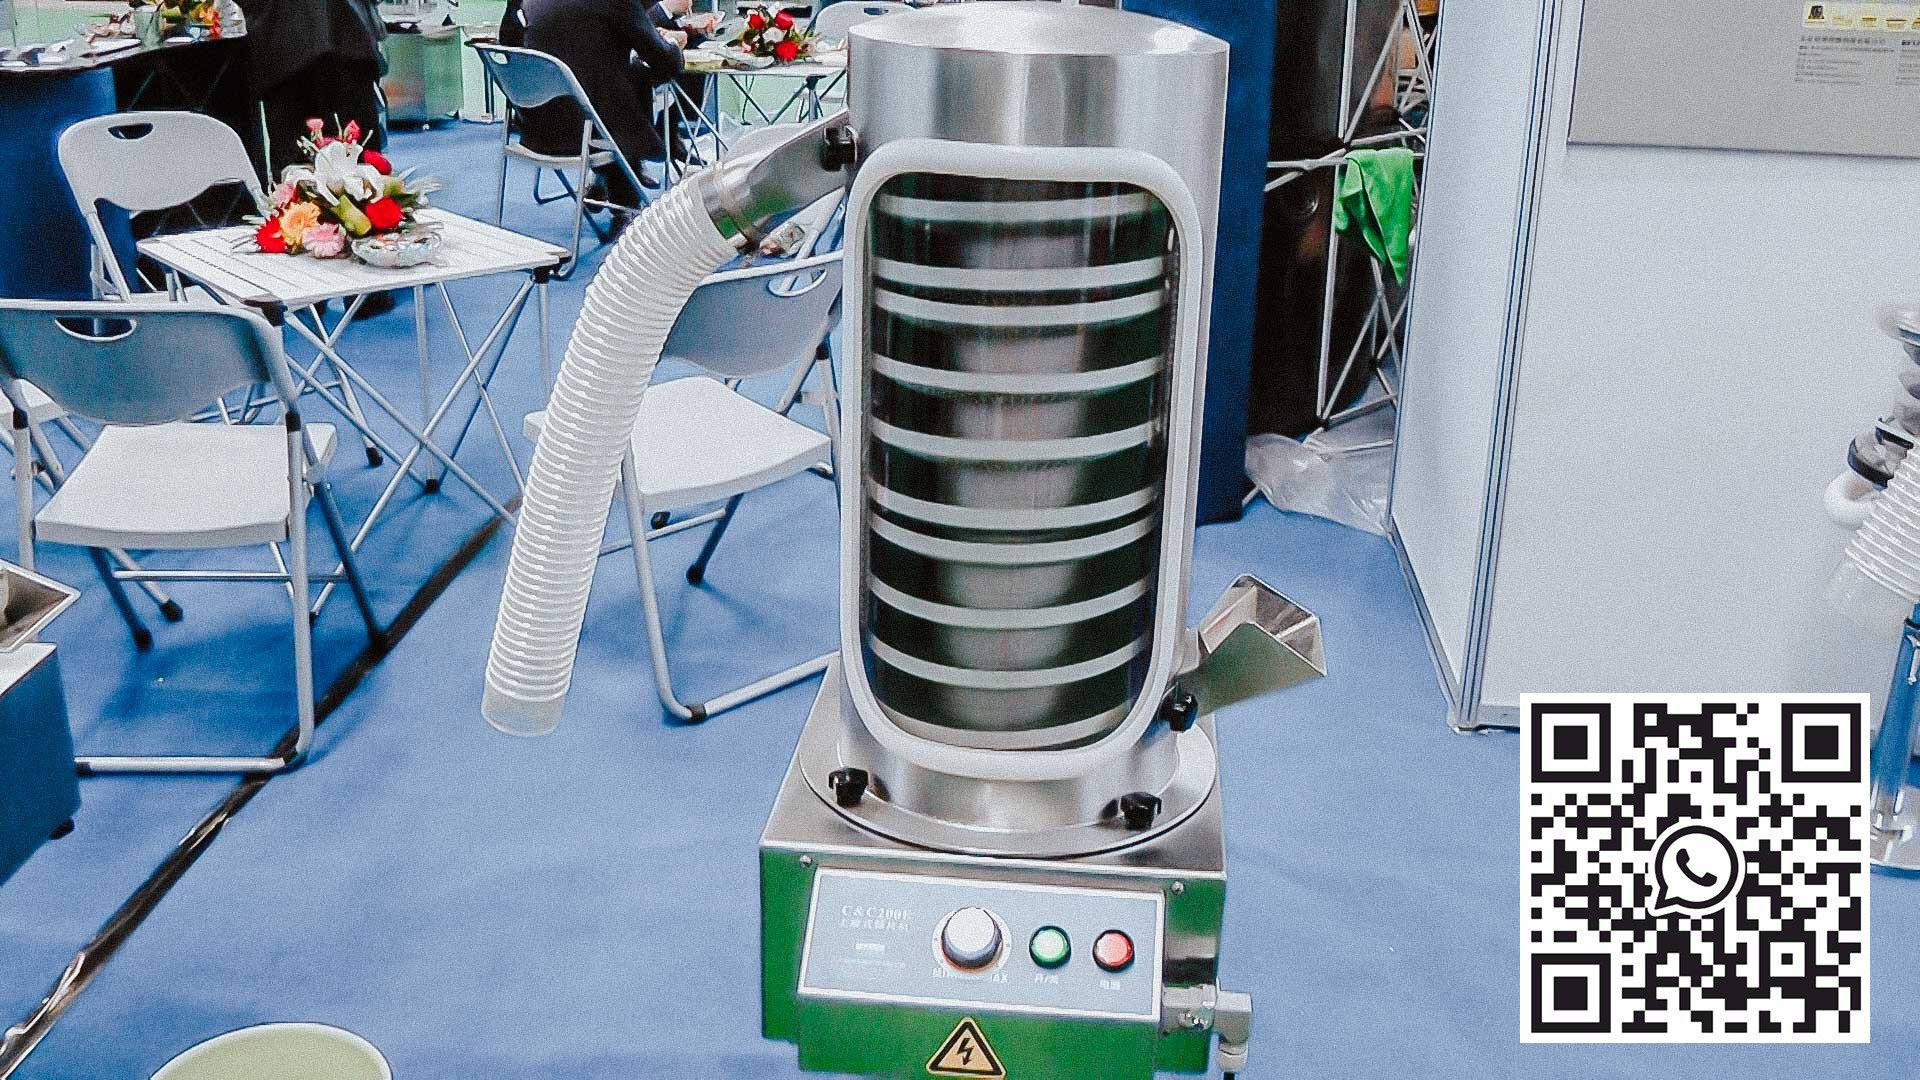 آلة إزالة الغبار الأوتوماتيكية للكمبيوتر اللوحي مع مكنسة كهربائية دوائية